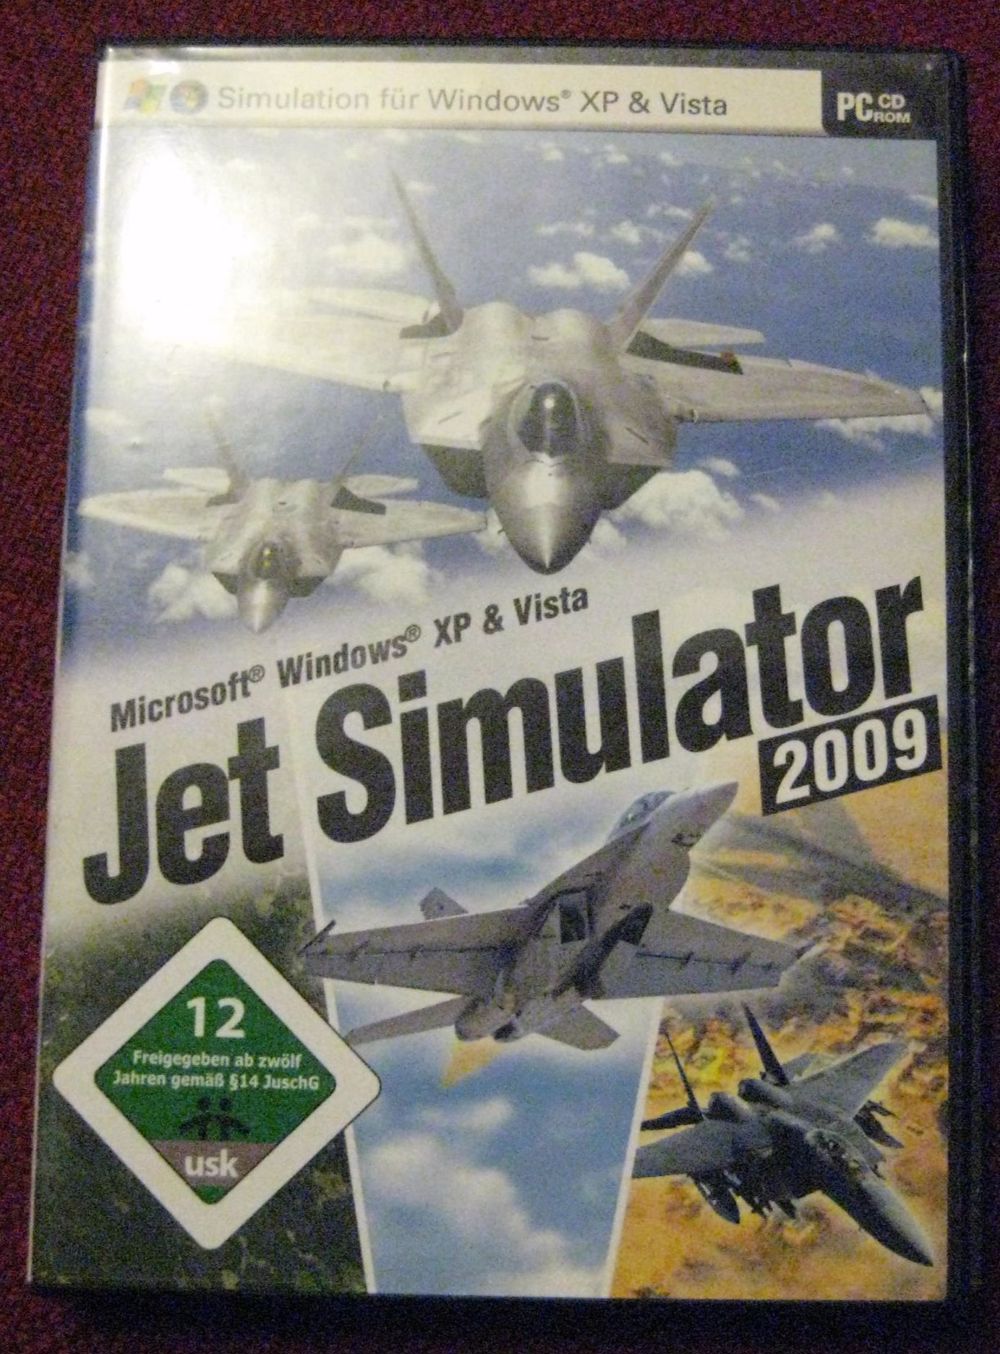 Jet Simulator 2009, tolles PC-Spiel für Liebhaber von Flugspielen, OVP, USK ab 12 Jahren